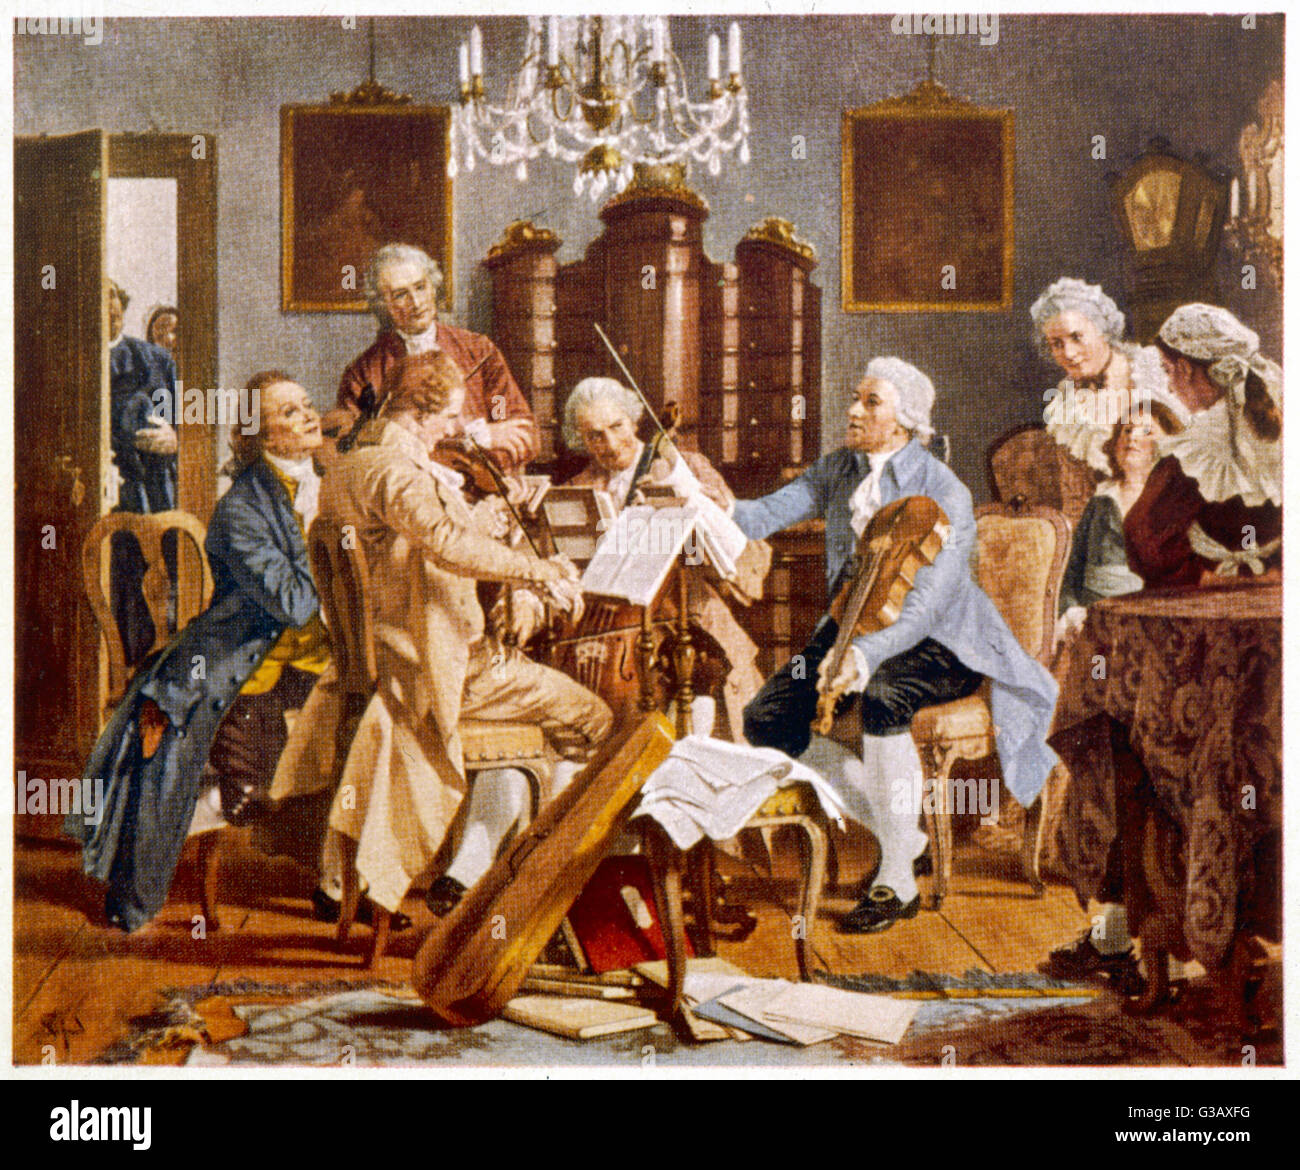 Haydn und Begleiter führen ein Streichquartett Zuhause Esterhazy, Ungarn Datum: ca. 1780 Stockfoto